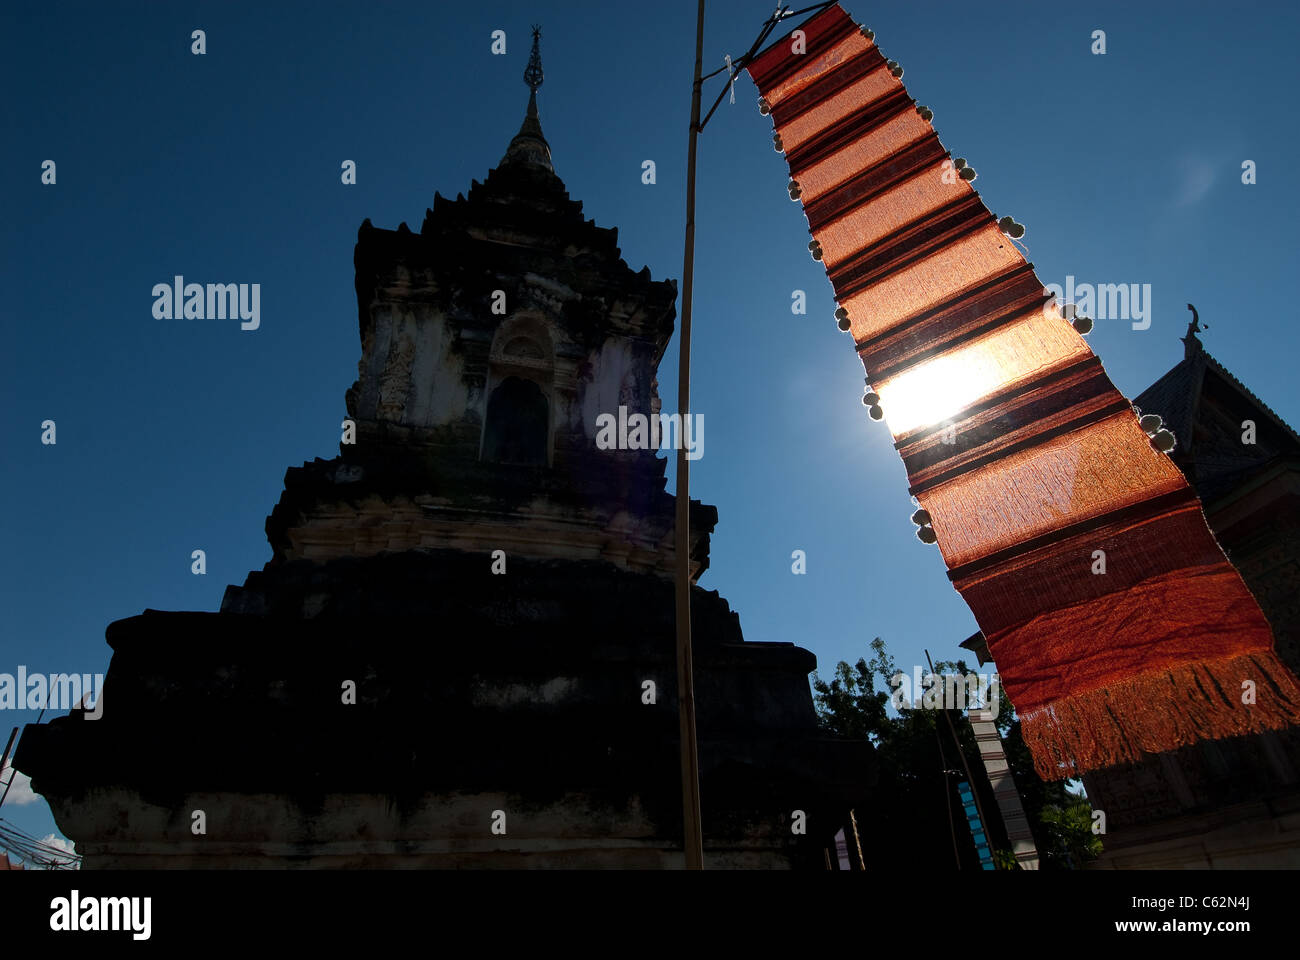 Wat Hua Khuang. Nan. Northern Thailand. Stock Photo